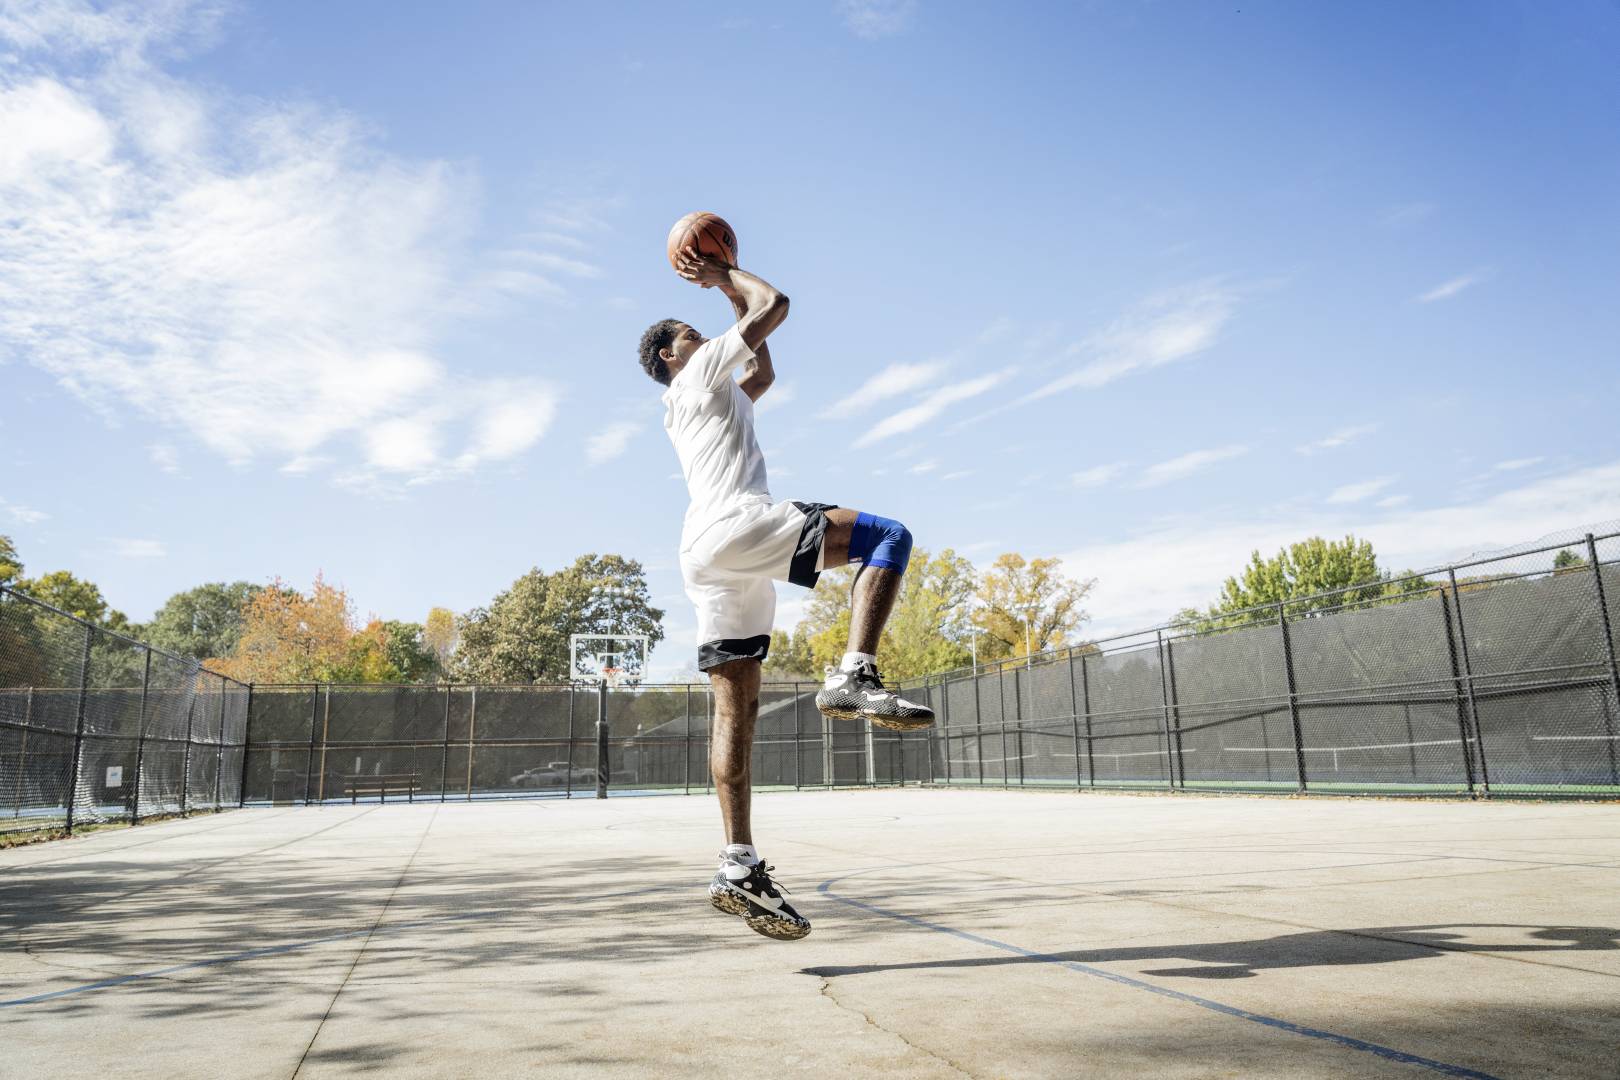 Basketballer springt auf einem Streetcourt für den Wurf ab	 Hände mit Ball überm Kopf	 ein Bein angewinkelt	 das andere senkrecht nach unten zeigend